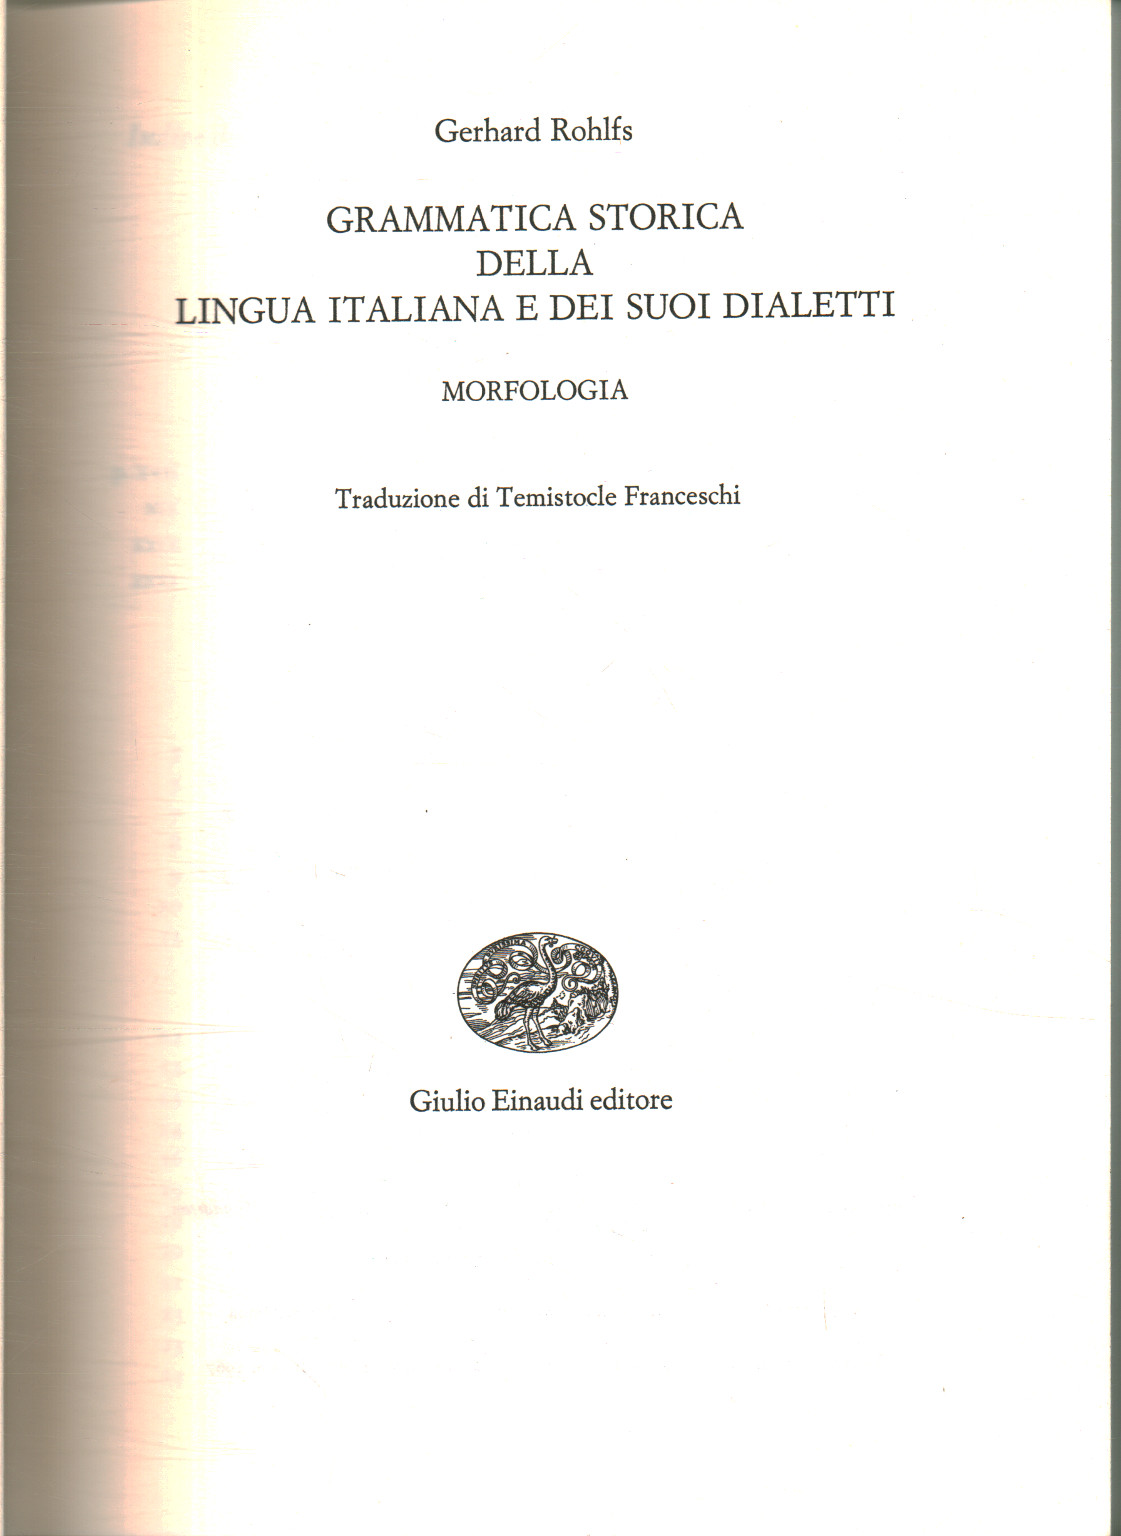 Grammaire historique de la langue italienne et la sienne, Gerhard Rohlfs